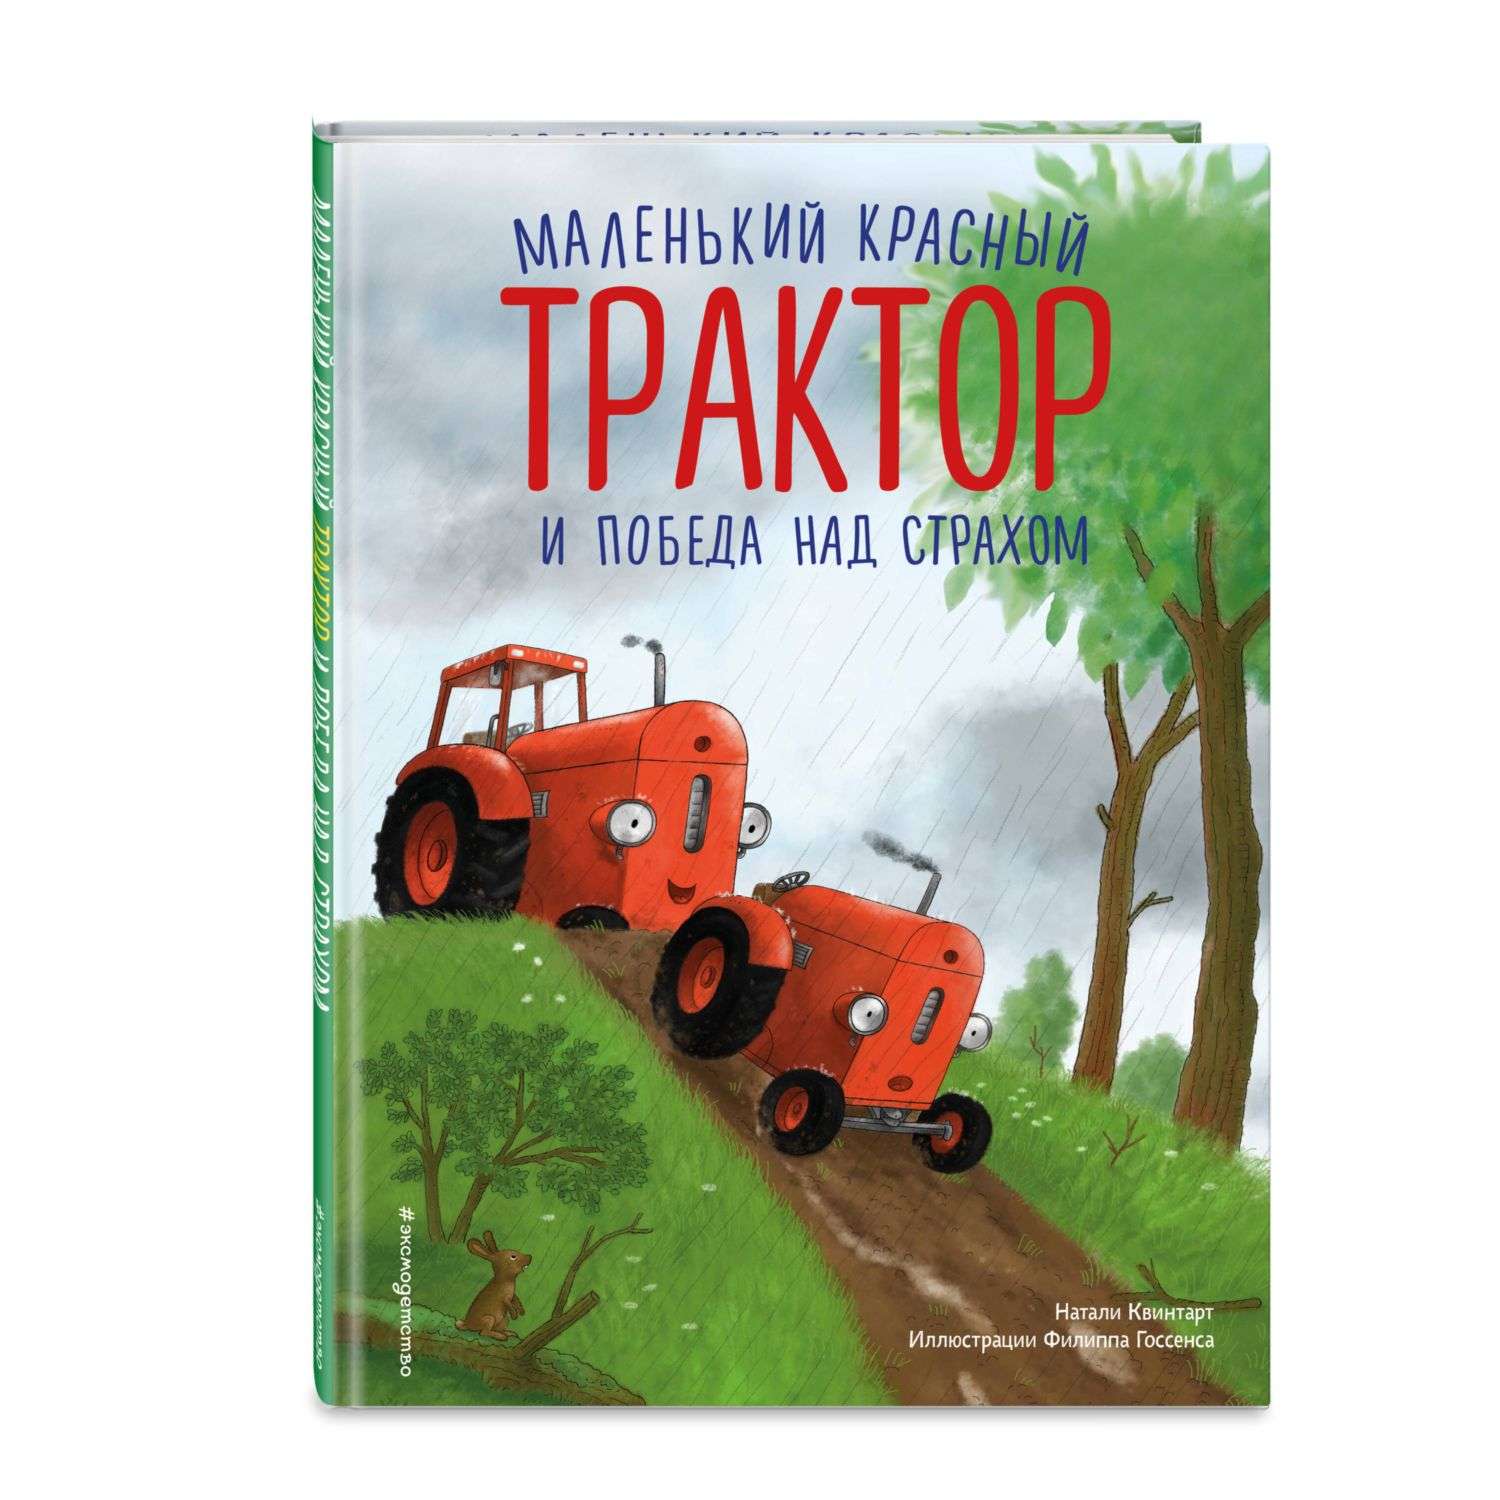 Книга Маленький красный Трактор и победа над страхом иллюстрации Госсенса - фото 1